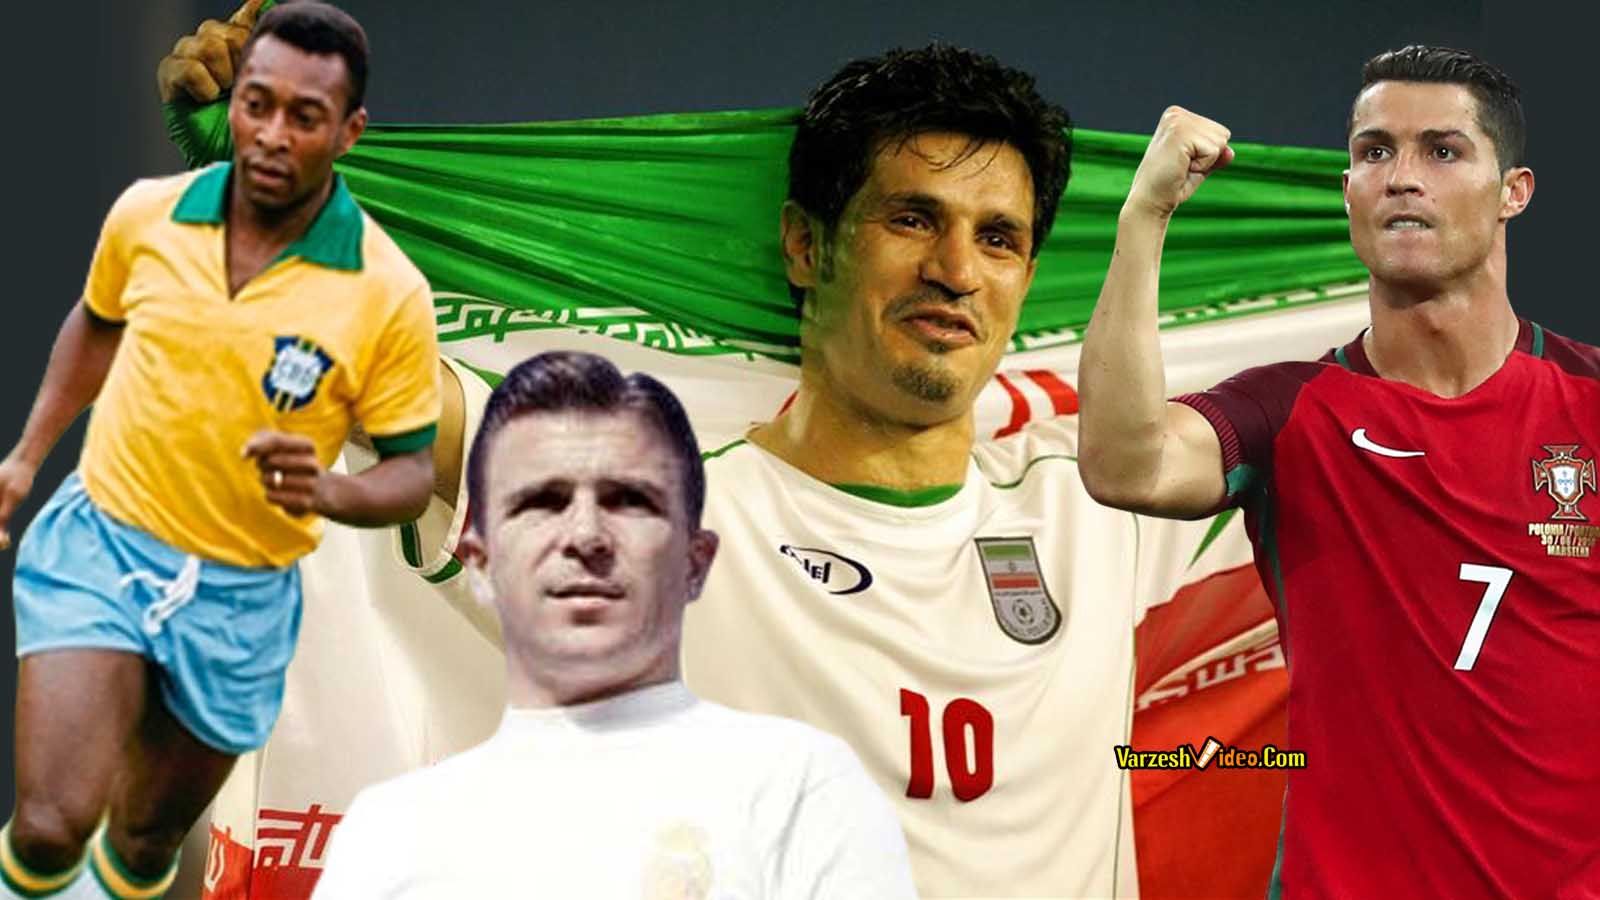 Top international football goal scorers